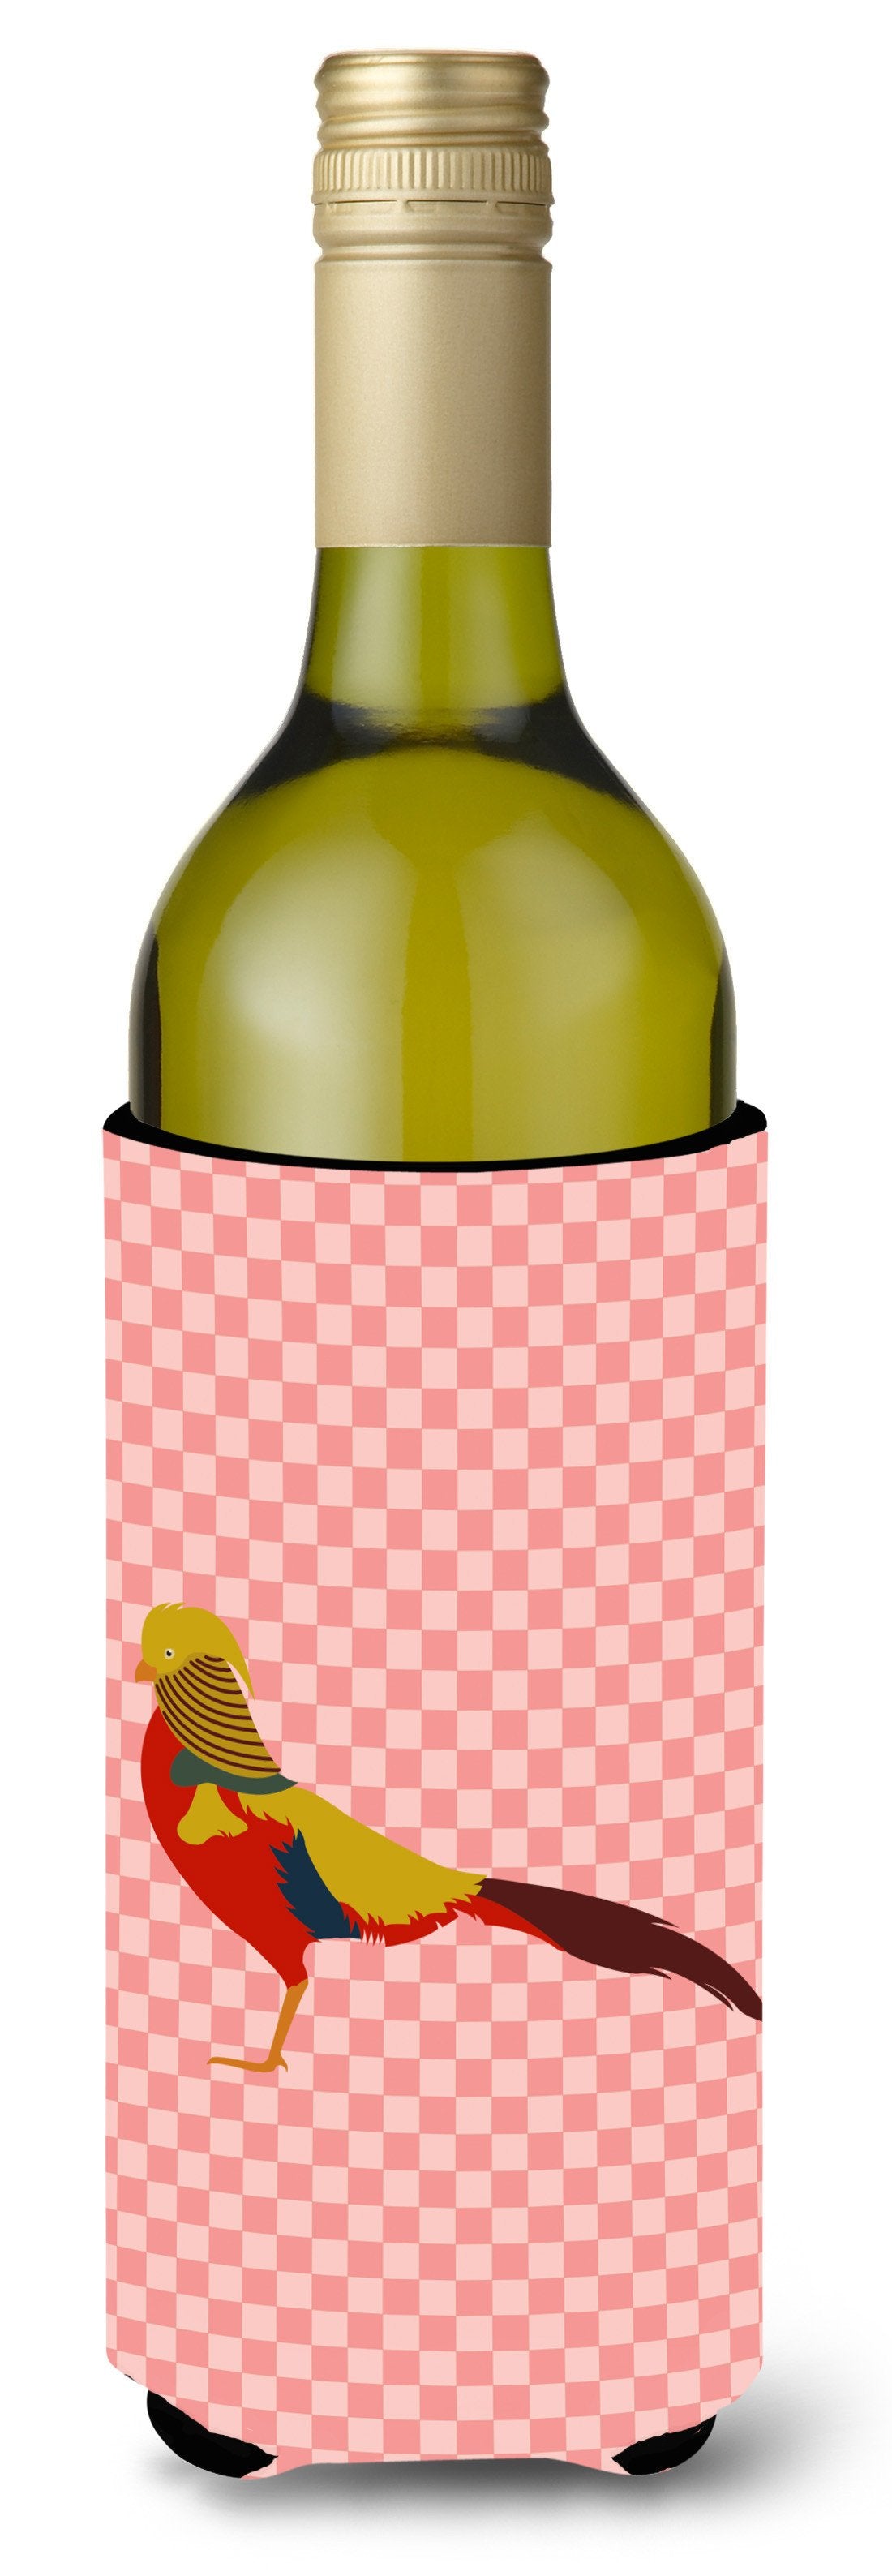 Golden or Chinese Pheasant Pink Check Wine Bottle Beverge Insulator Hugger BB7928LITERK by Caroline's Treasures